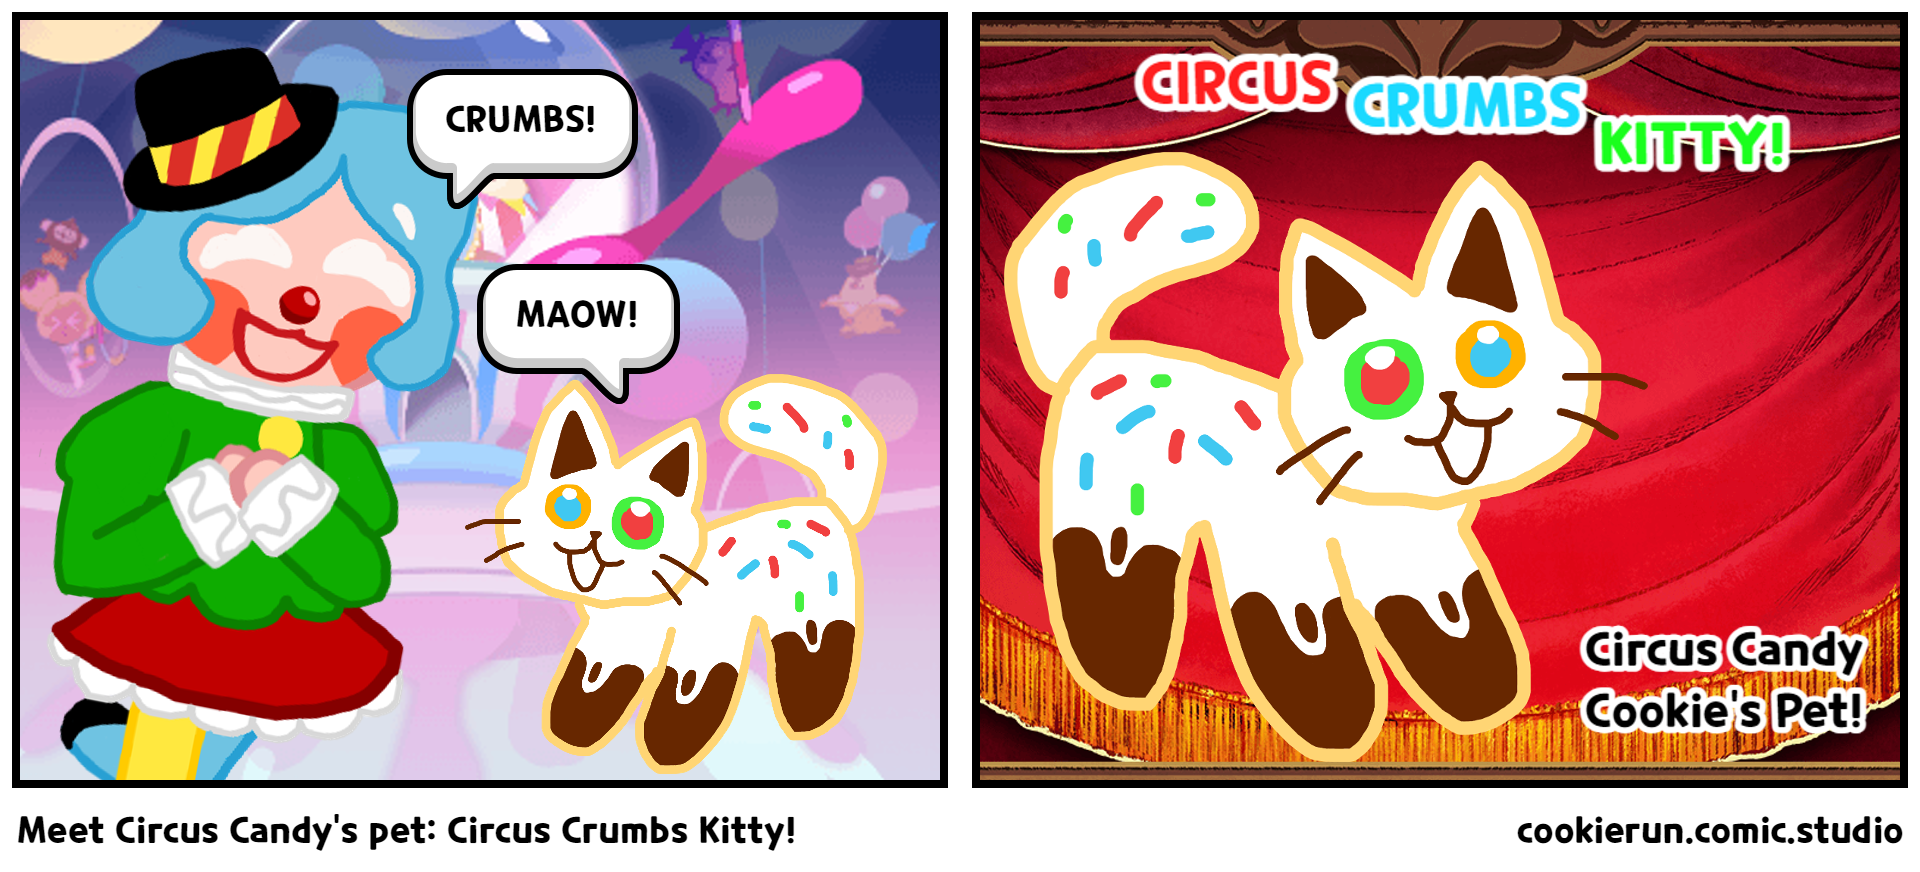 Meet Circus Candy's pet: Circus Crumbs Kitty!